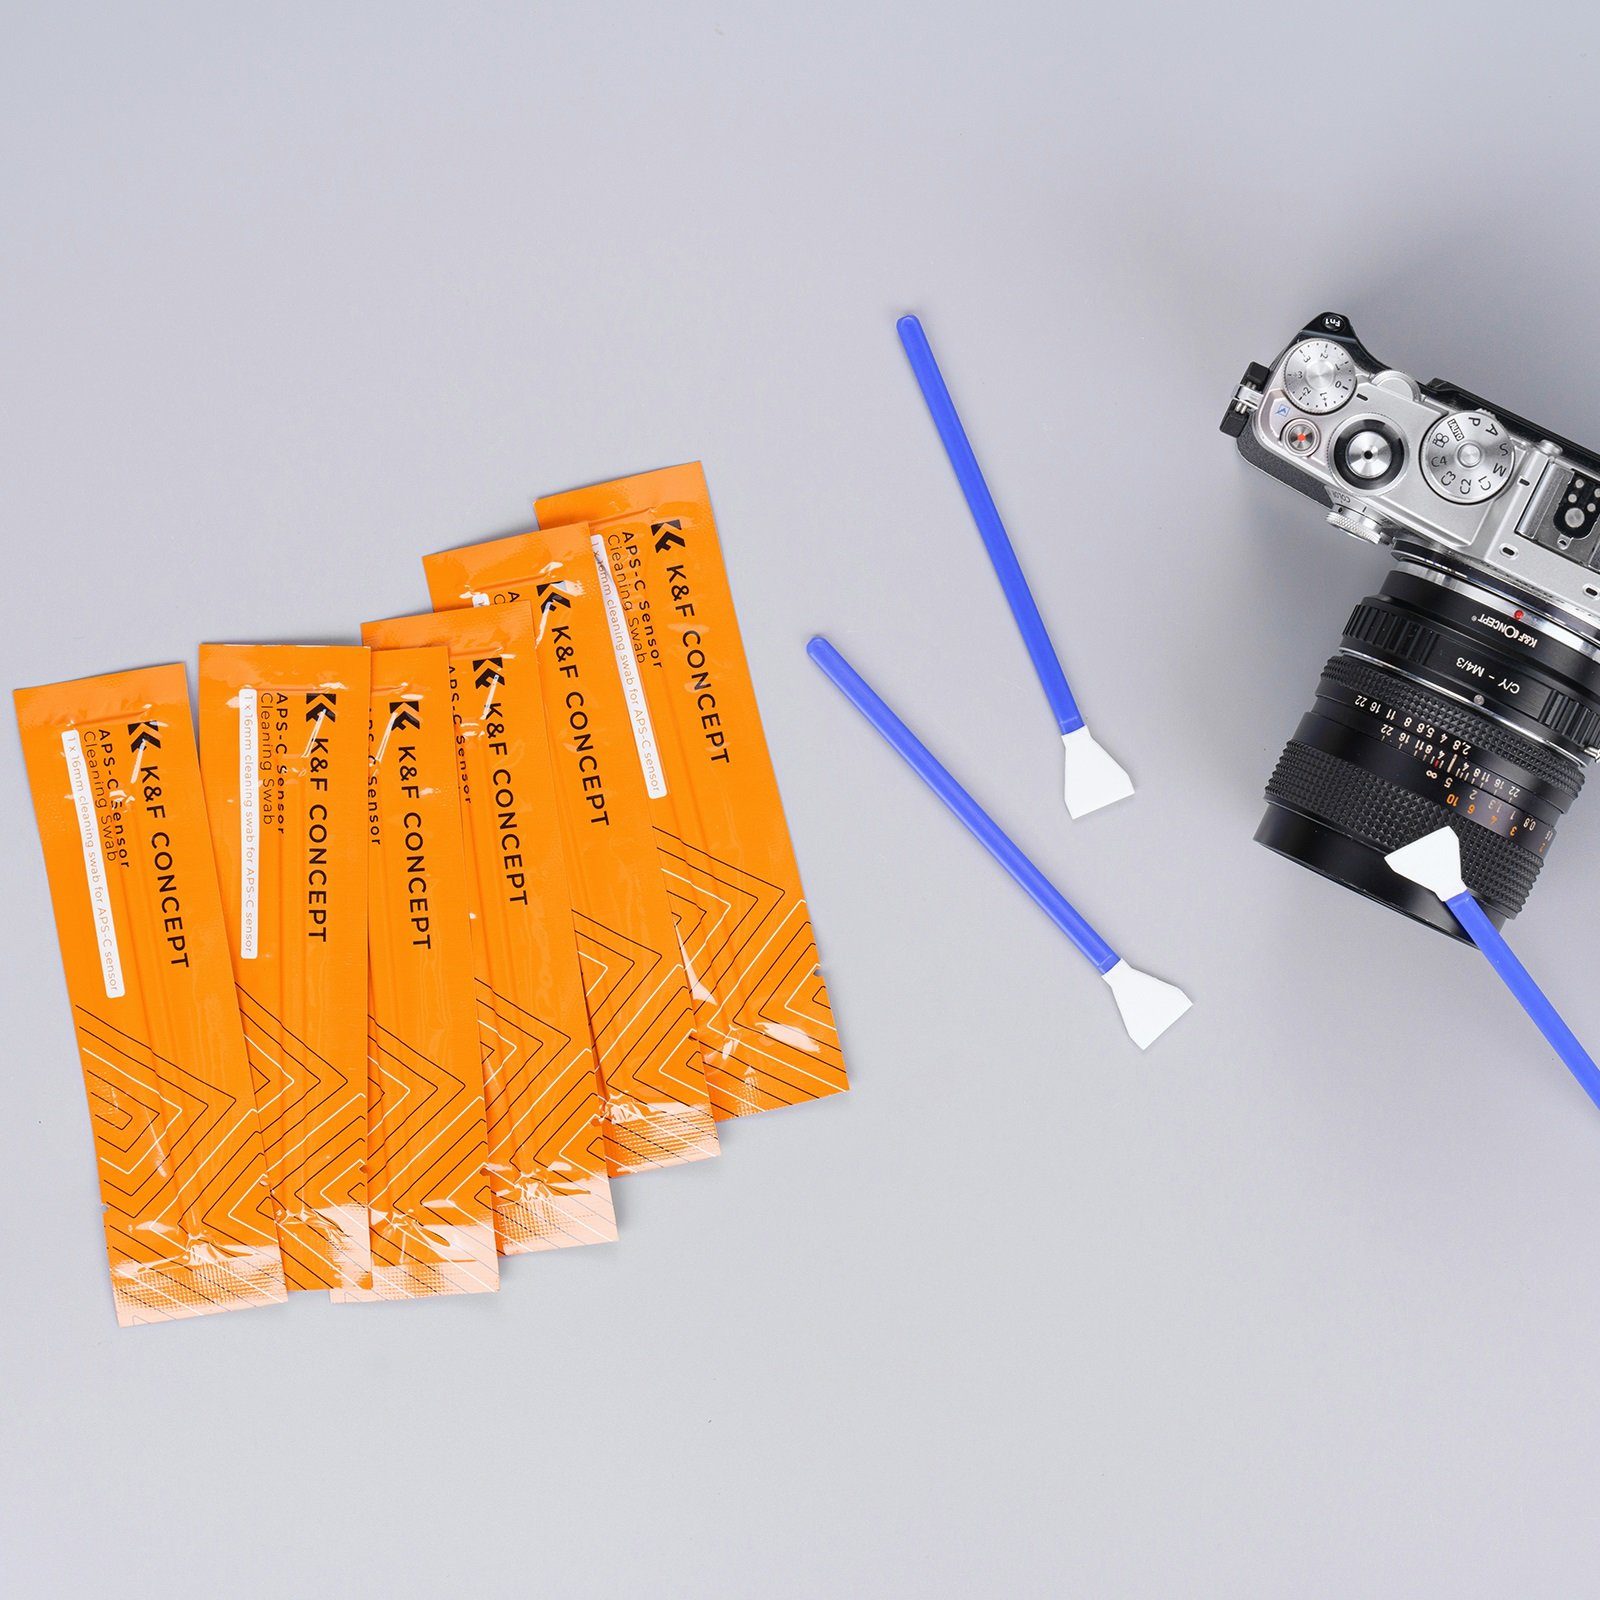 Minadax Kamerazubehör-Set KF Sensor Reinigung 20x Swabs Reiniger Handschuhe APS-C